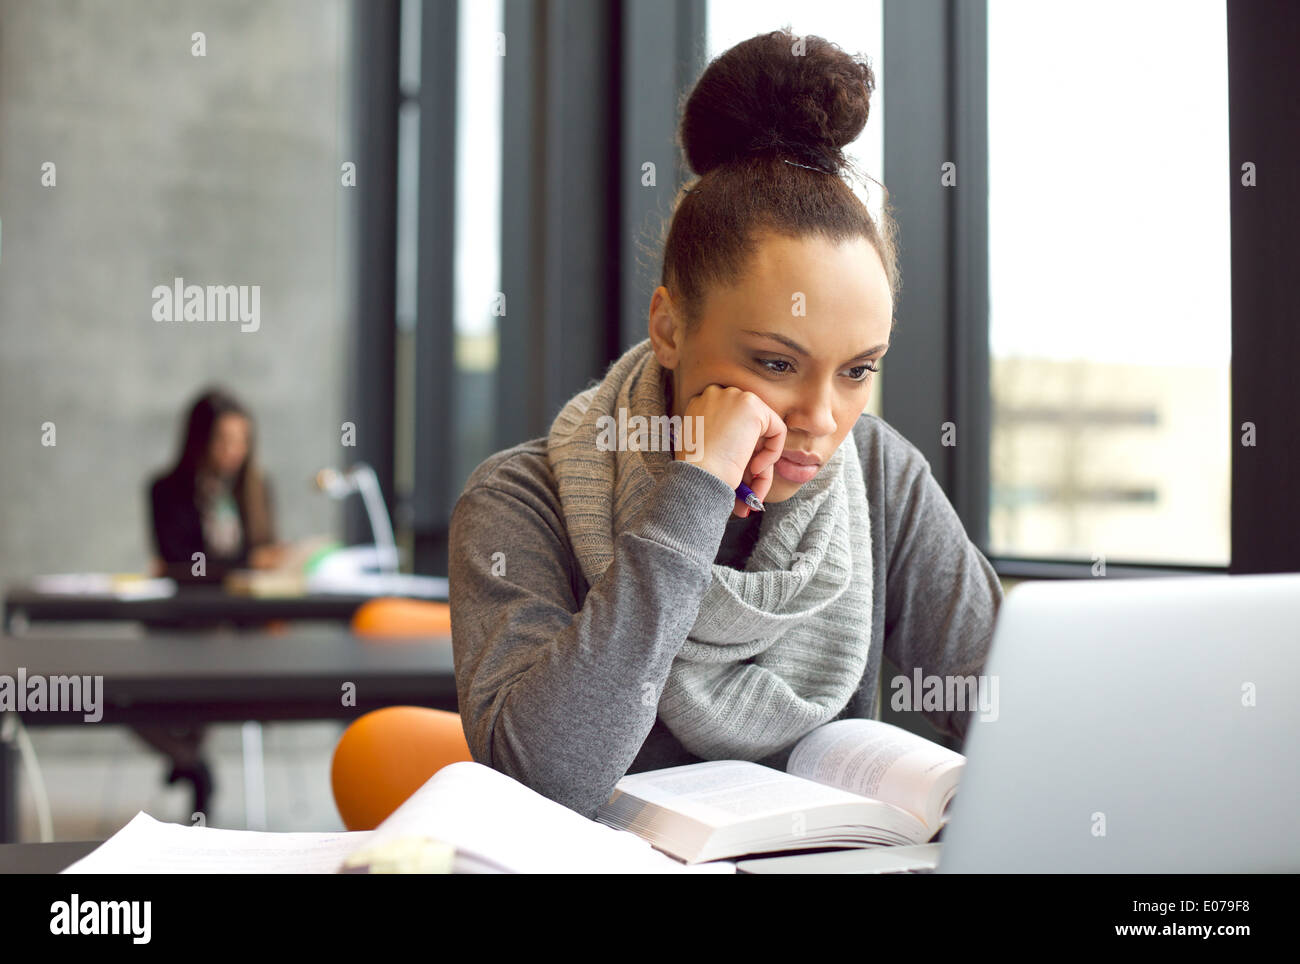 Ernste junge Studentin konzentriert sich auf ihrem Laptop während des Studiums in einer Bibliothek. Junge Frau am Tisch sitzen und lesen. Stockfoto